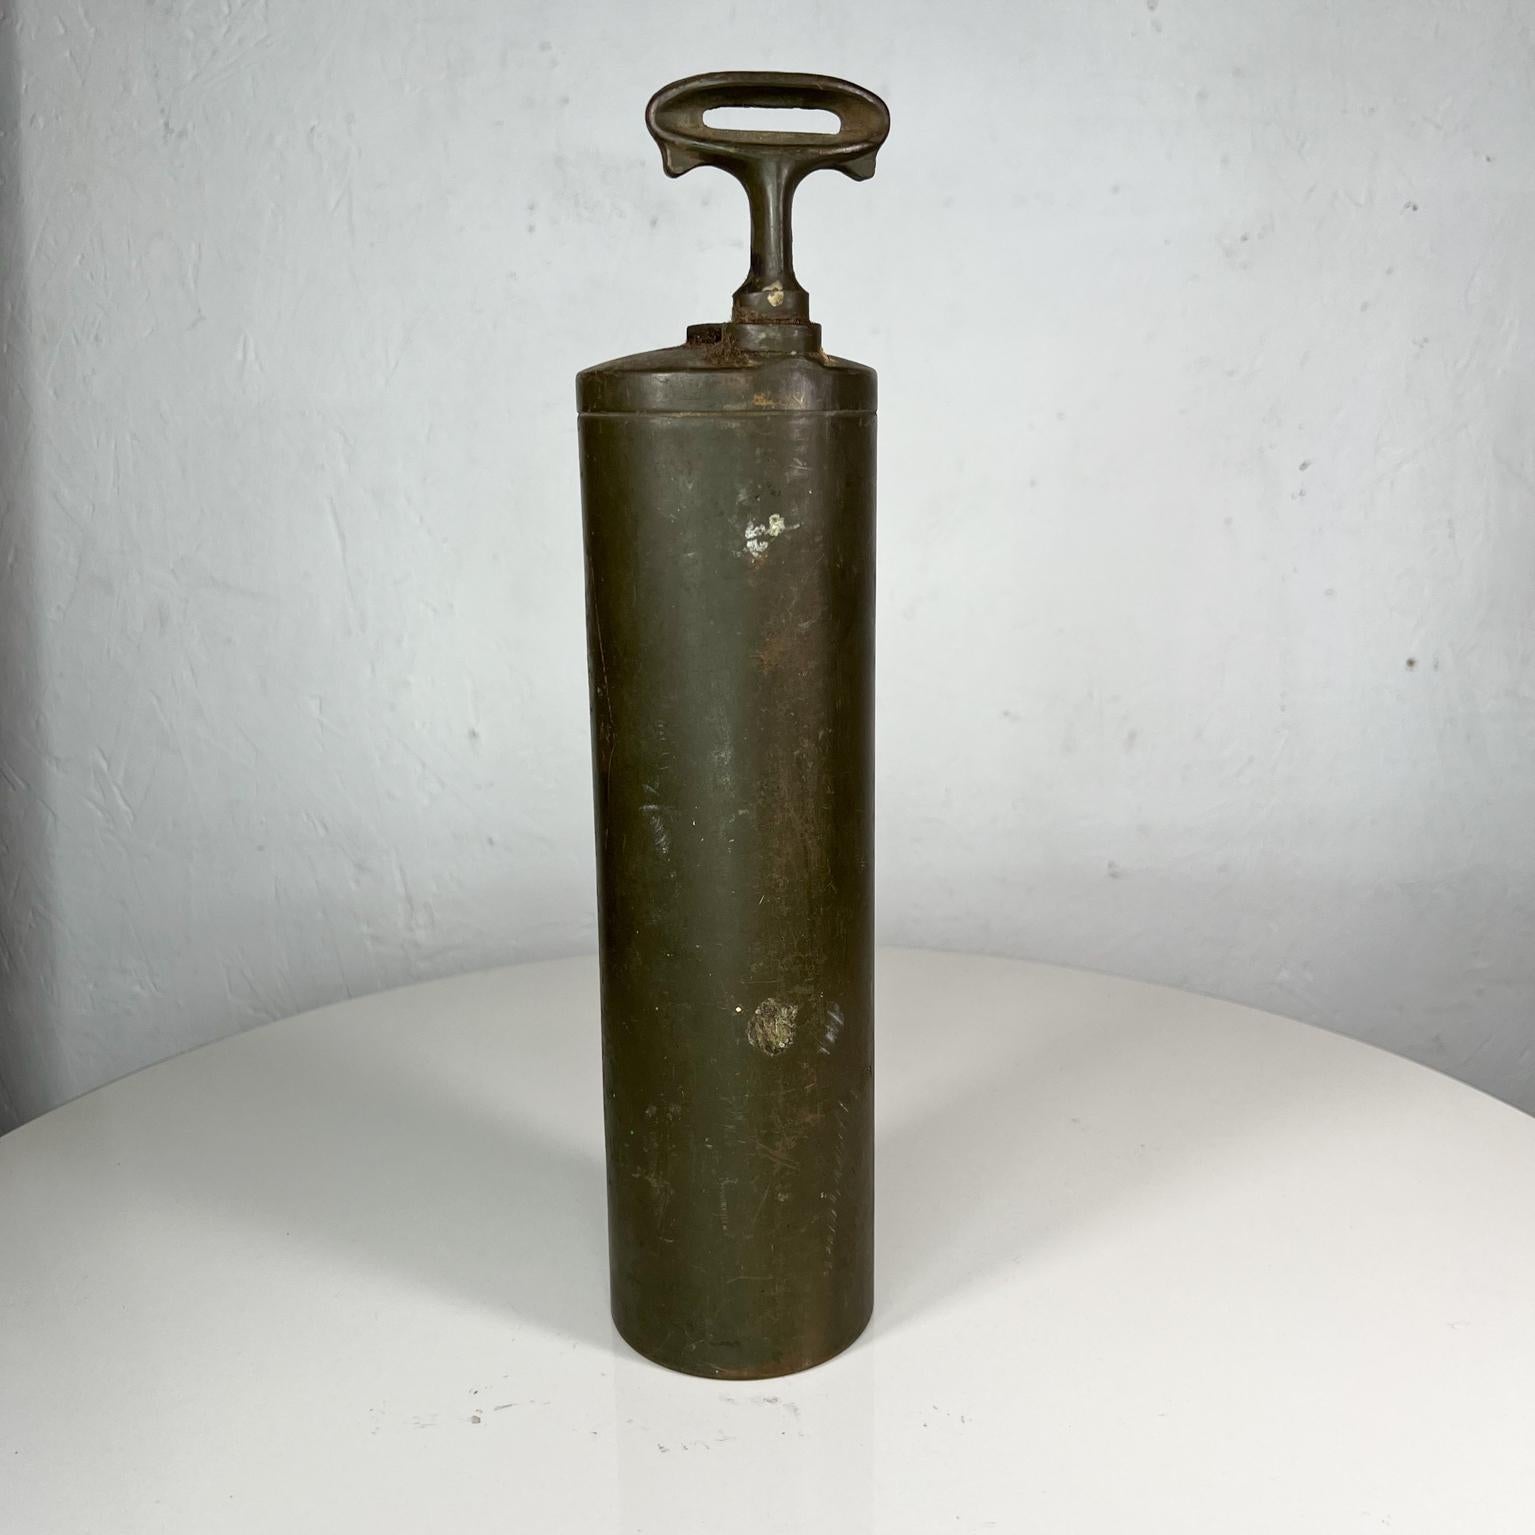 American Antique Brass Vintage Handle Fire Gun Extinguisher Underwriters Laboratories